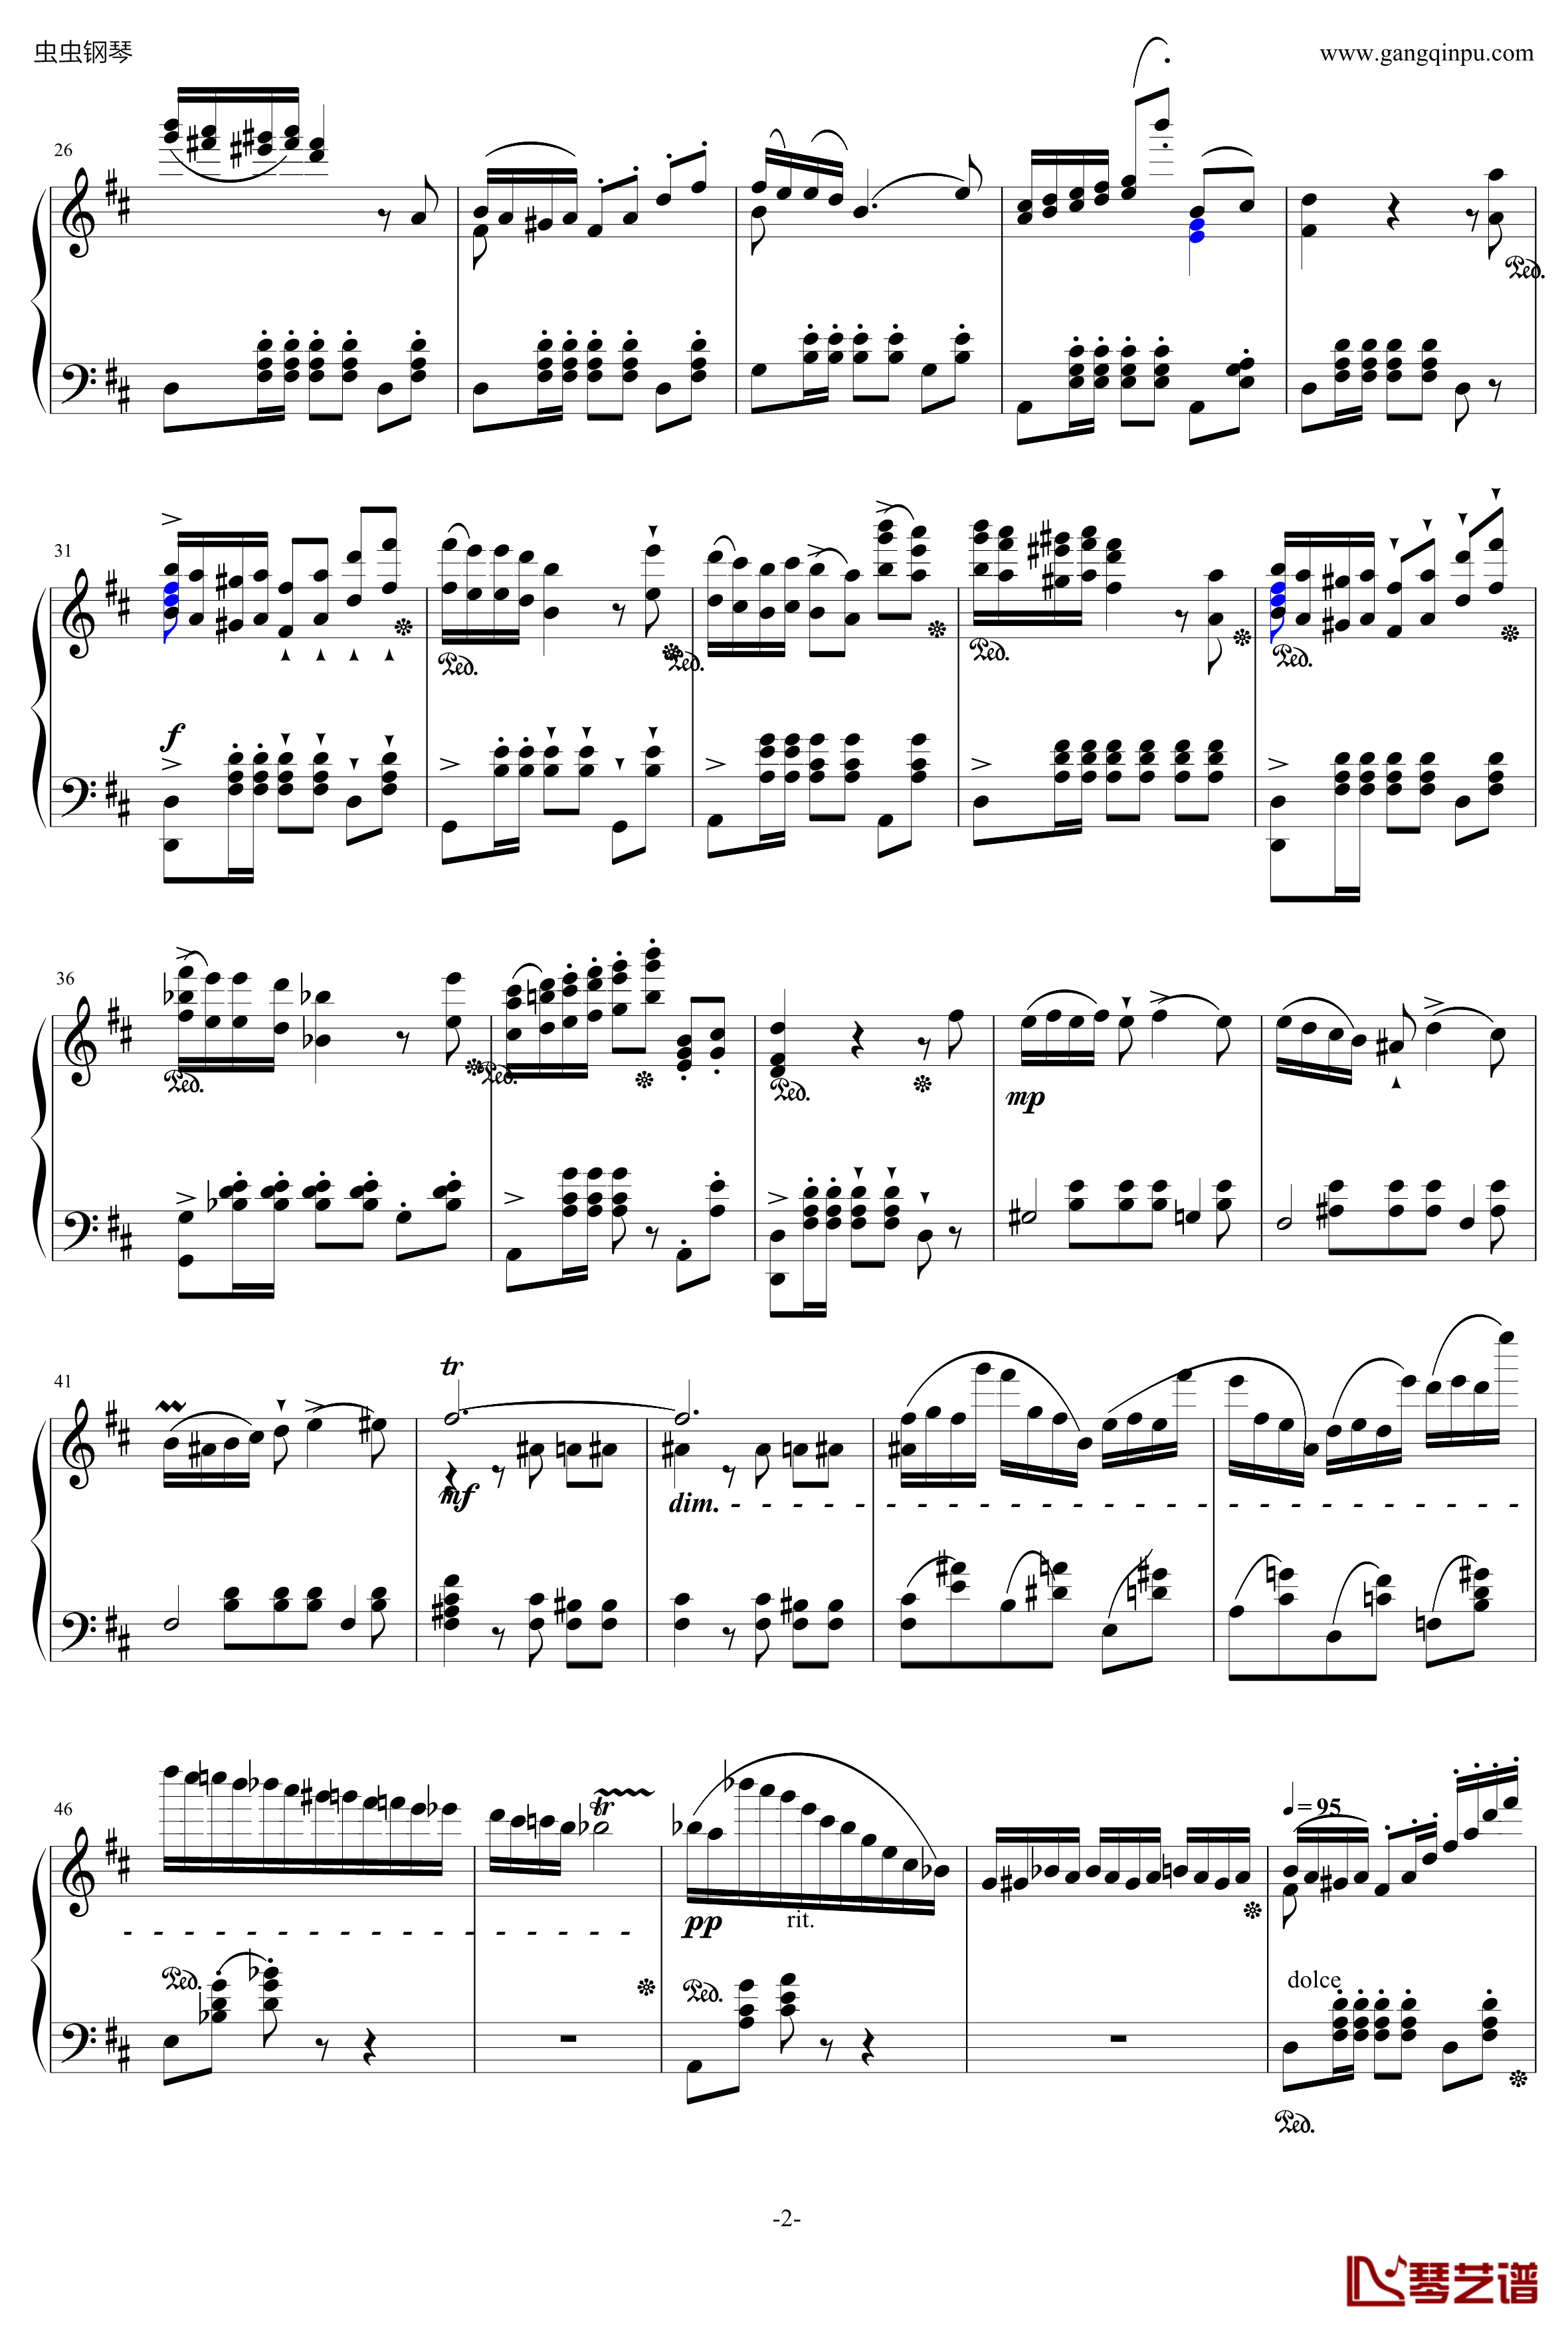 贝里尼清教徒引子和波兰舞曲S.391钢琴谱-李斯特2